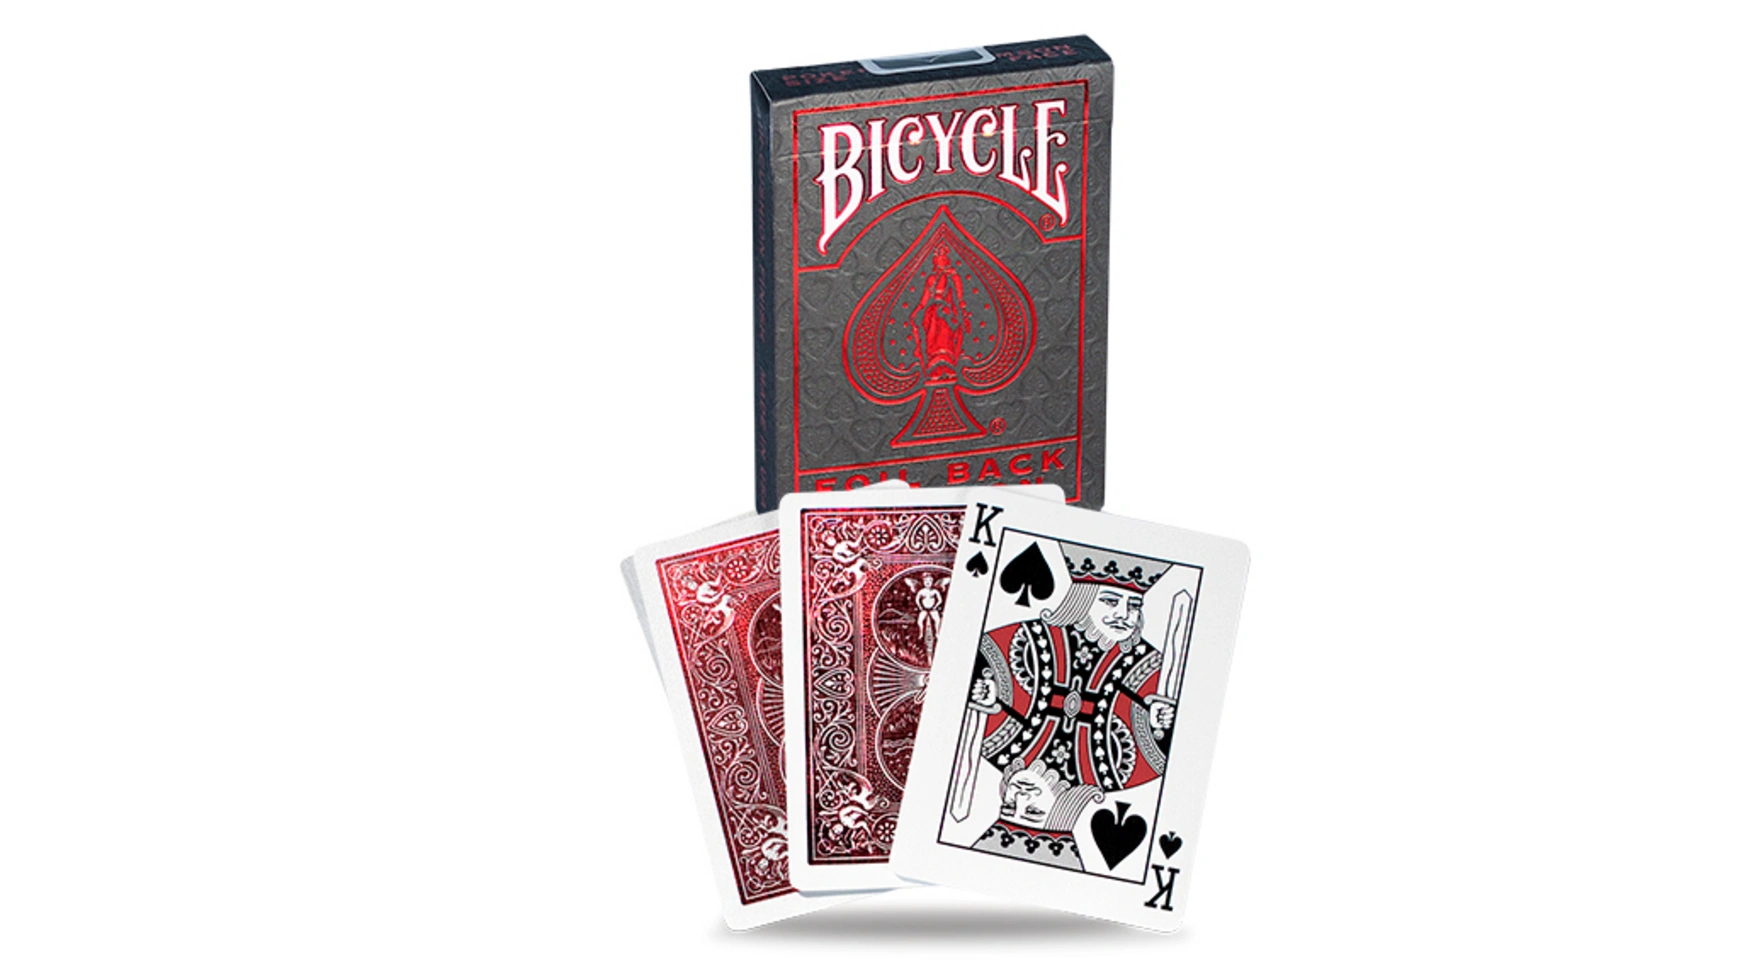 Bicycle игральные карты Metalluxe Red игральные карты ellusionist bicycle vintage 1900 series red